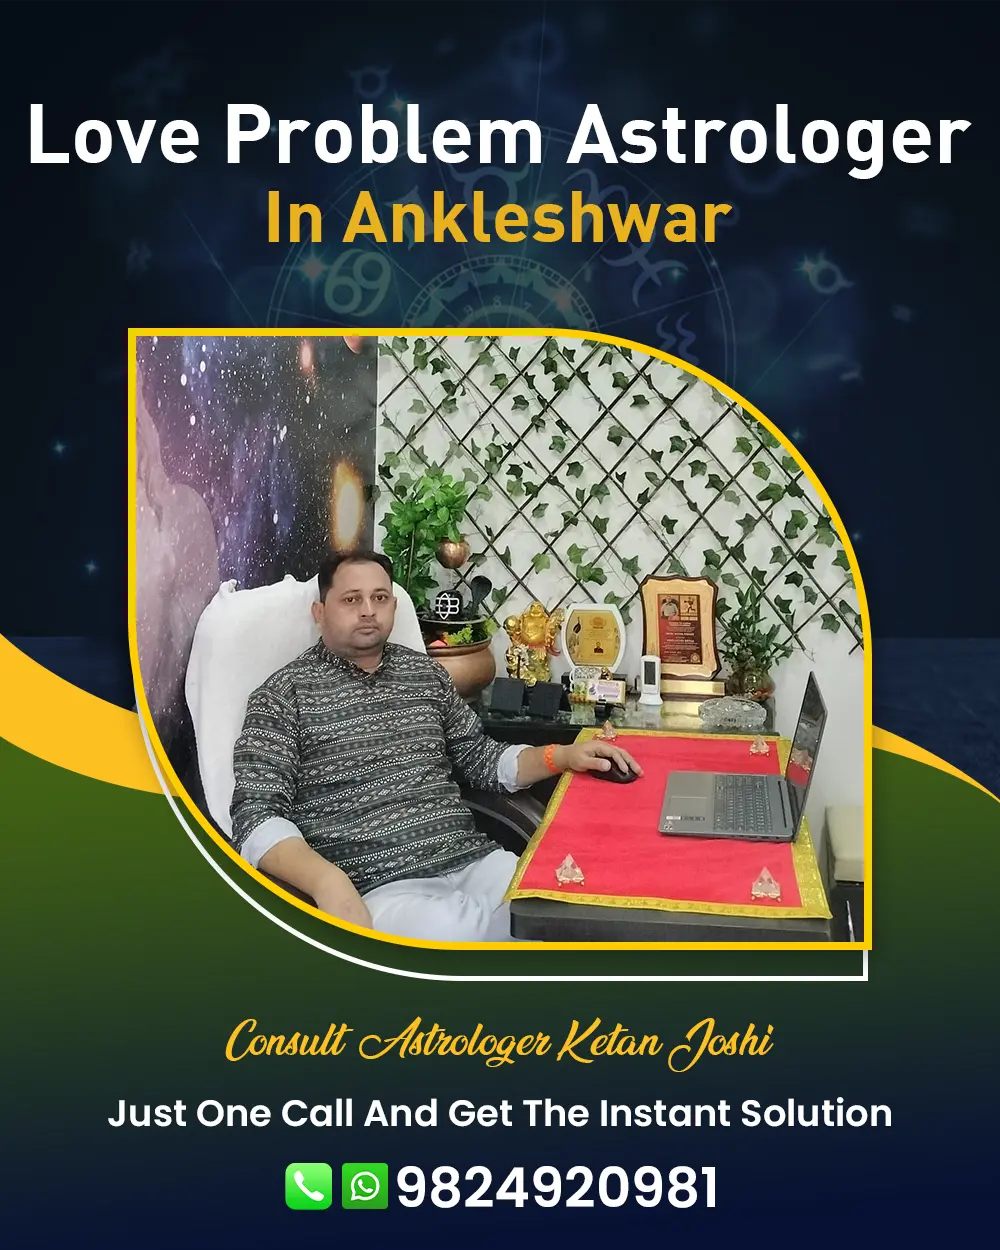 Love Problem Astrologer In Ankleshwar